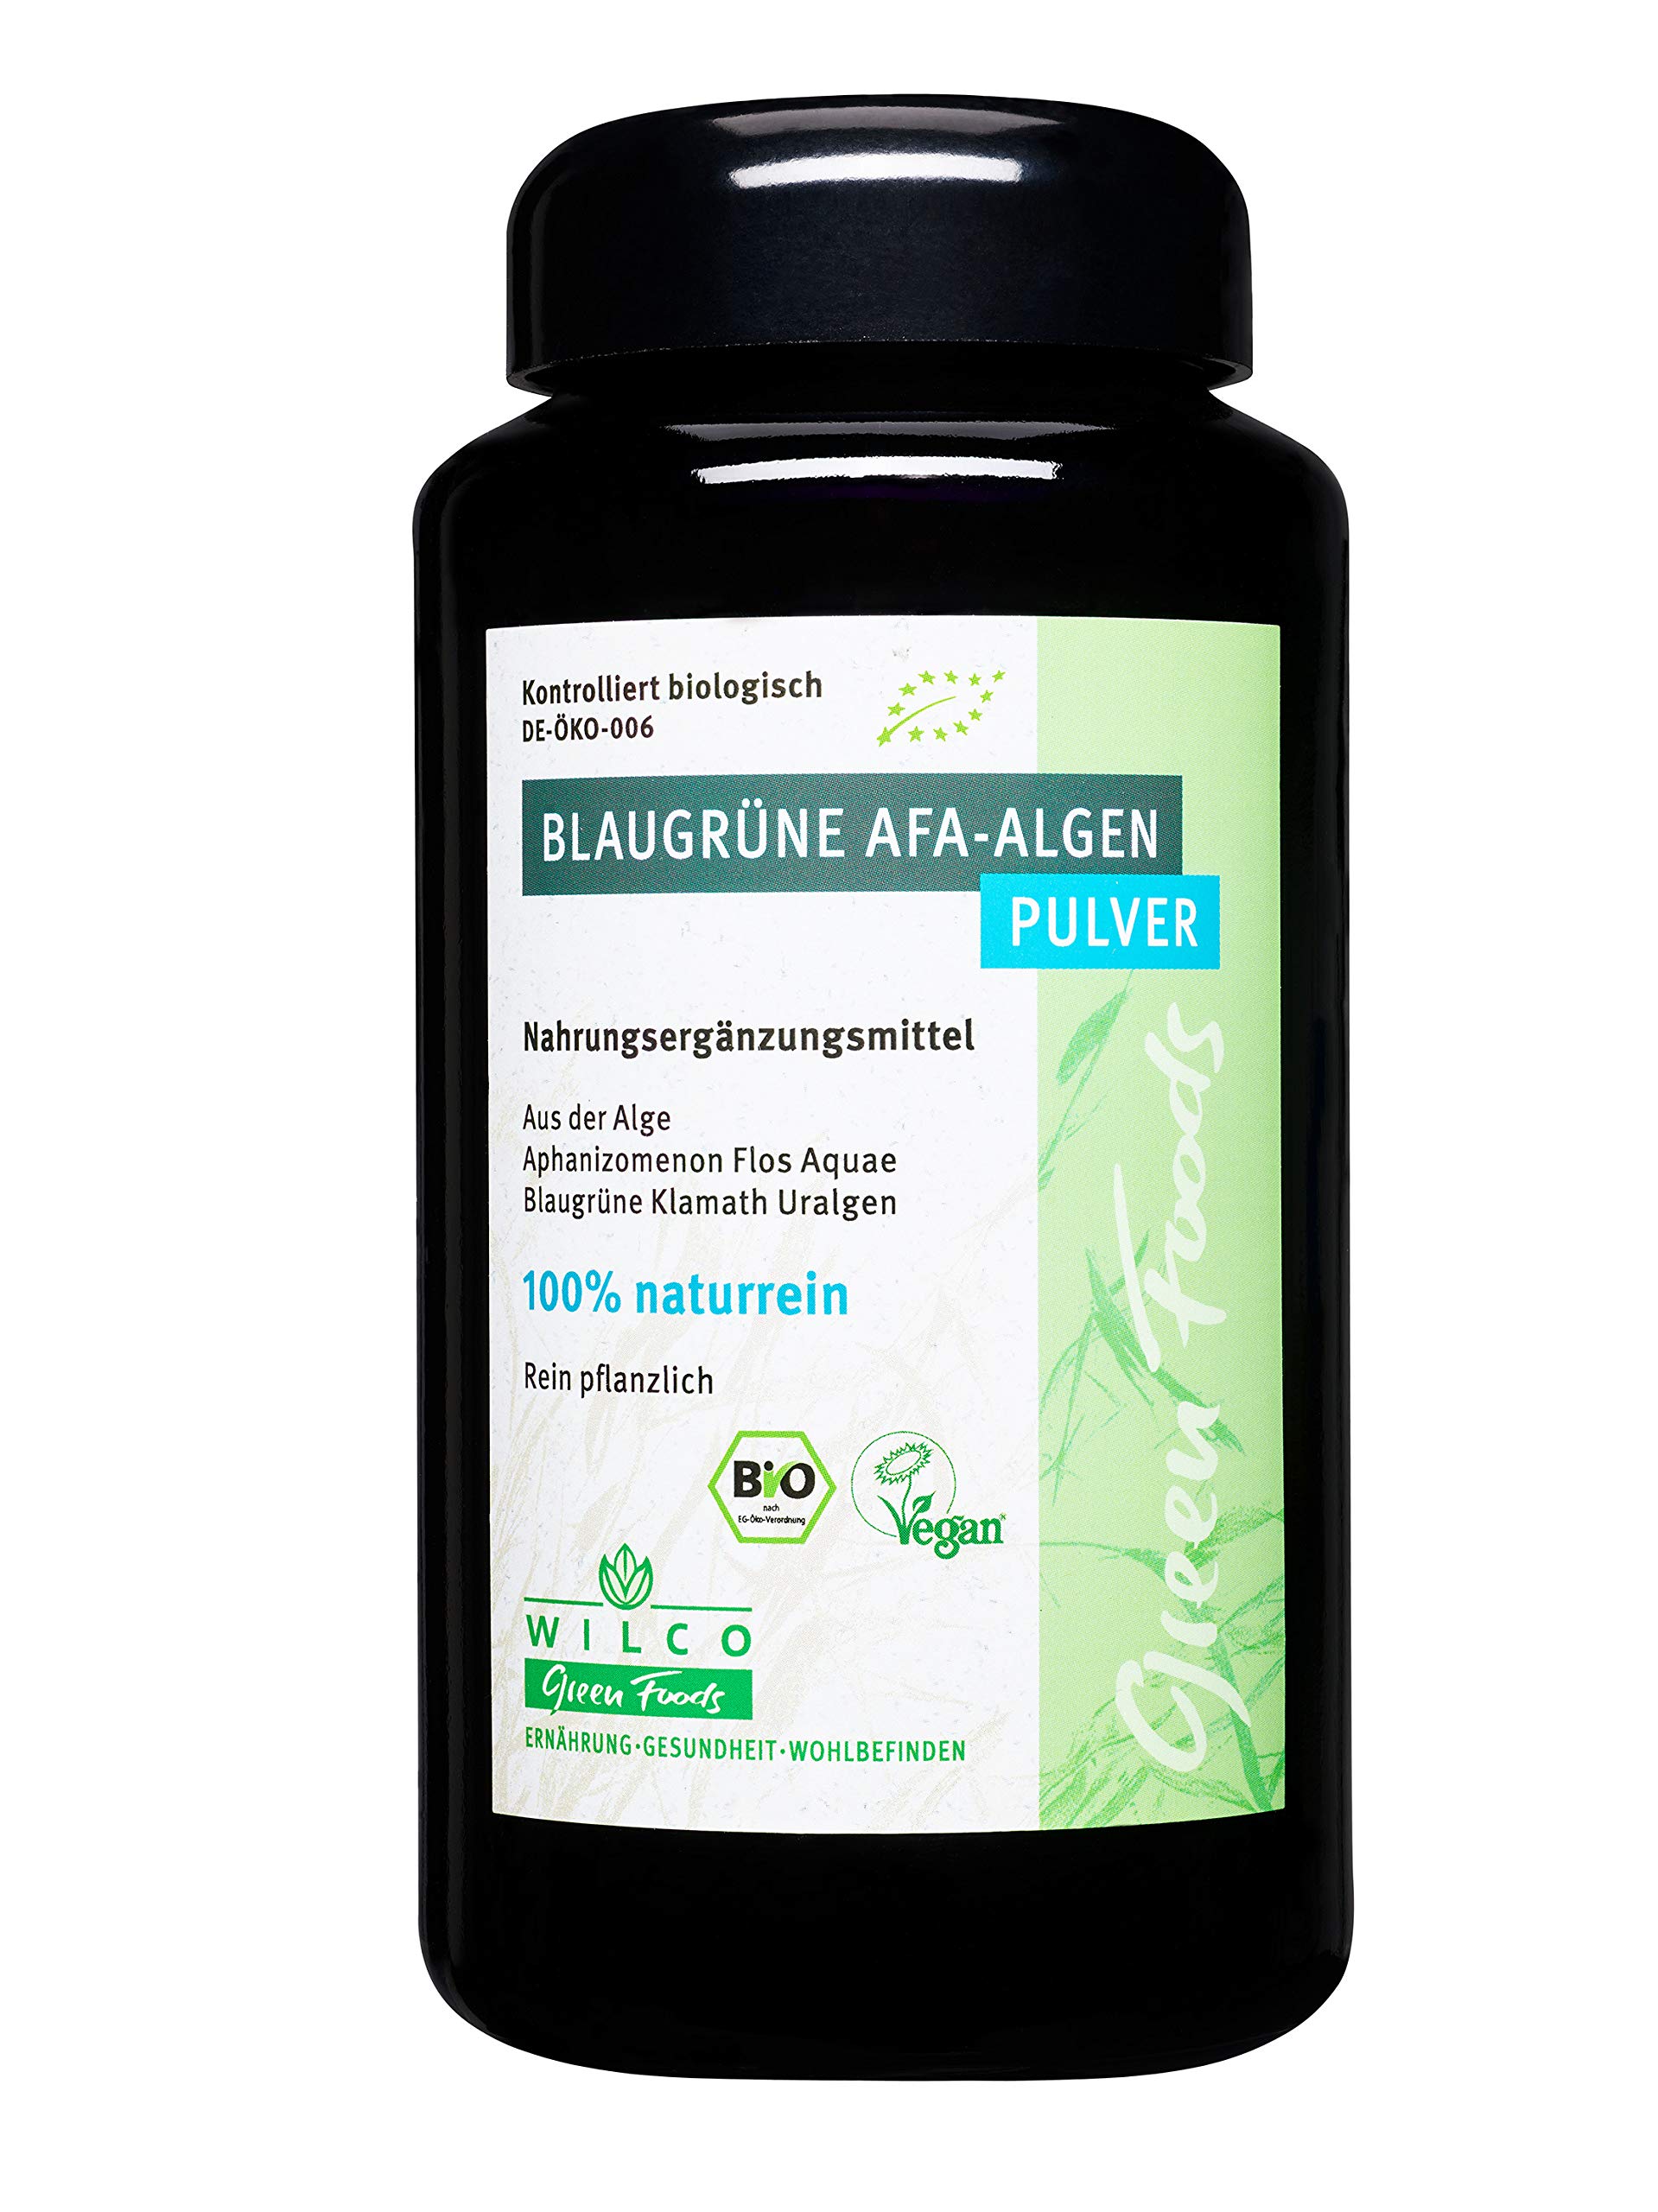 WILCO Bio AFA Algen Pulver 220g - 100% Naturreines Biologisches Nahrungsergänzungsmittel für körperliche Fitness und ein gesteigertes Wohlbefinden - Vitamin B12